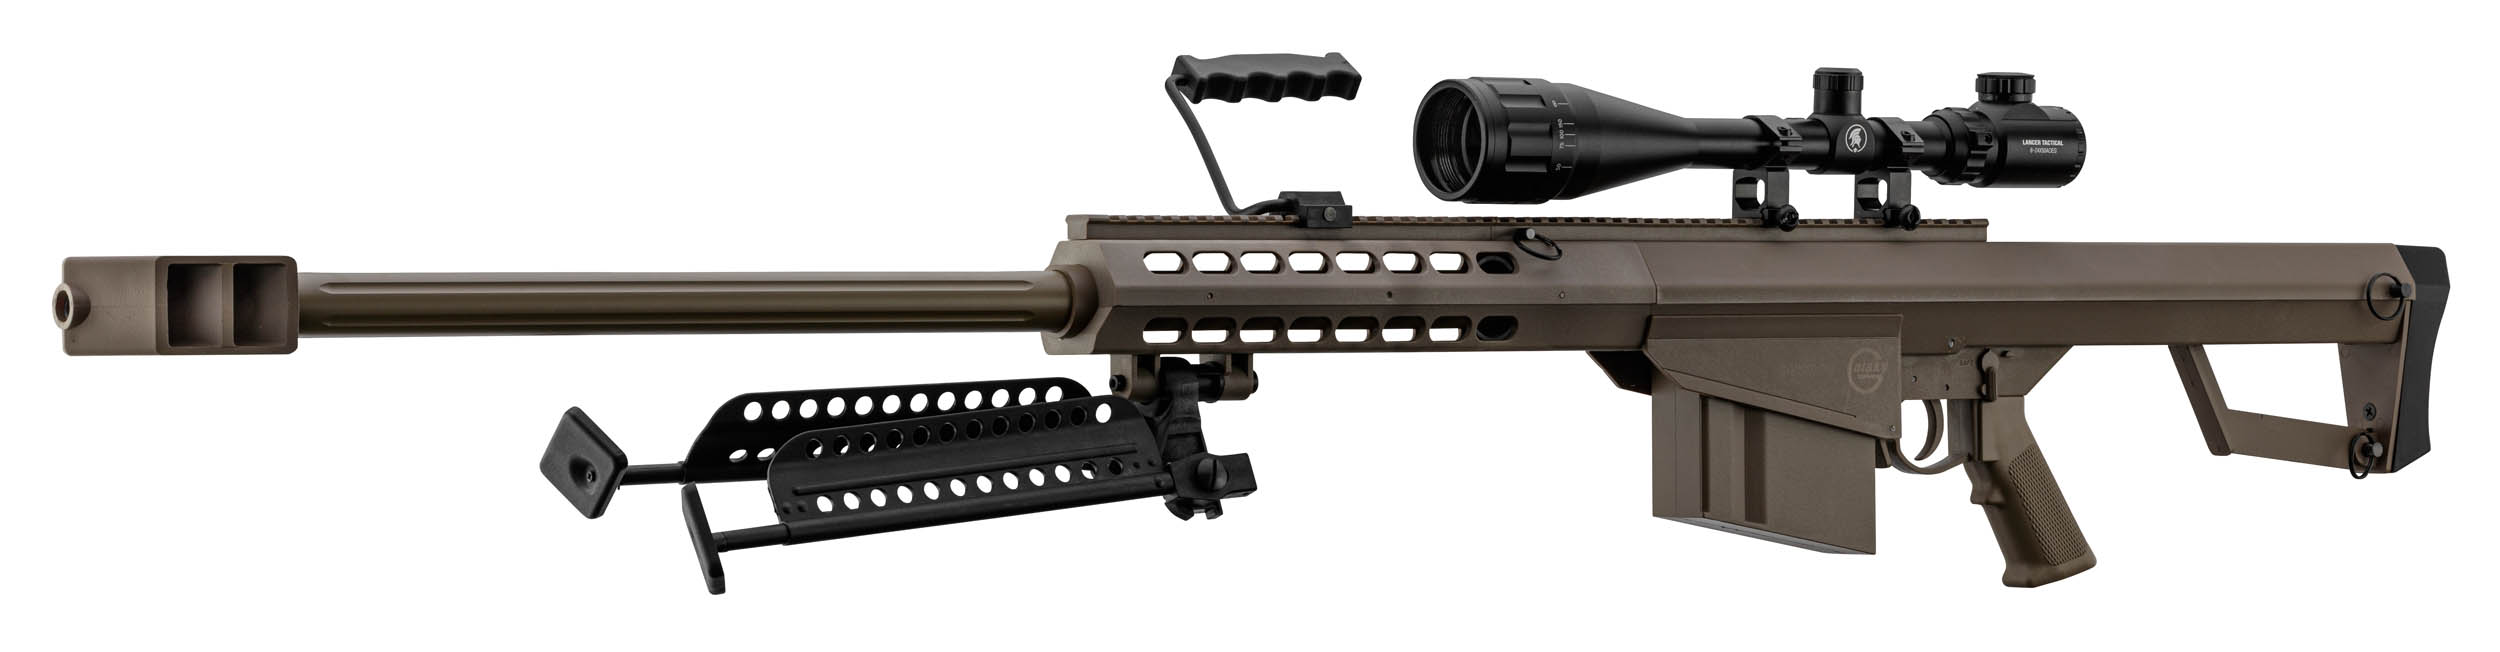 PCKLR3052-07 Pack Sniper LT-20 tan M82 1,5J + lunette + bi-pied + poignée - PCKLR3052